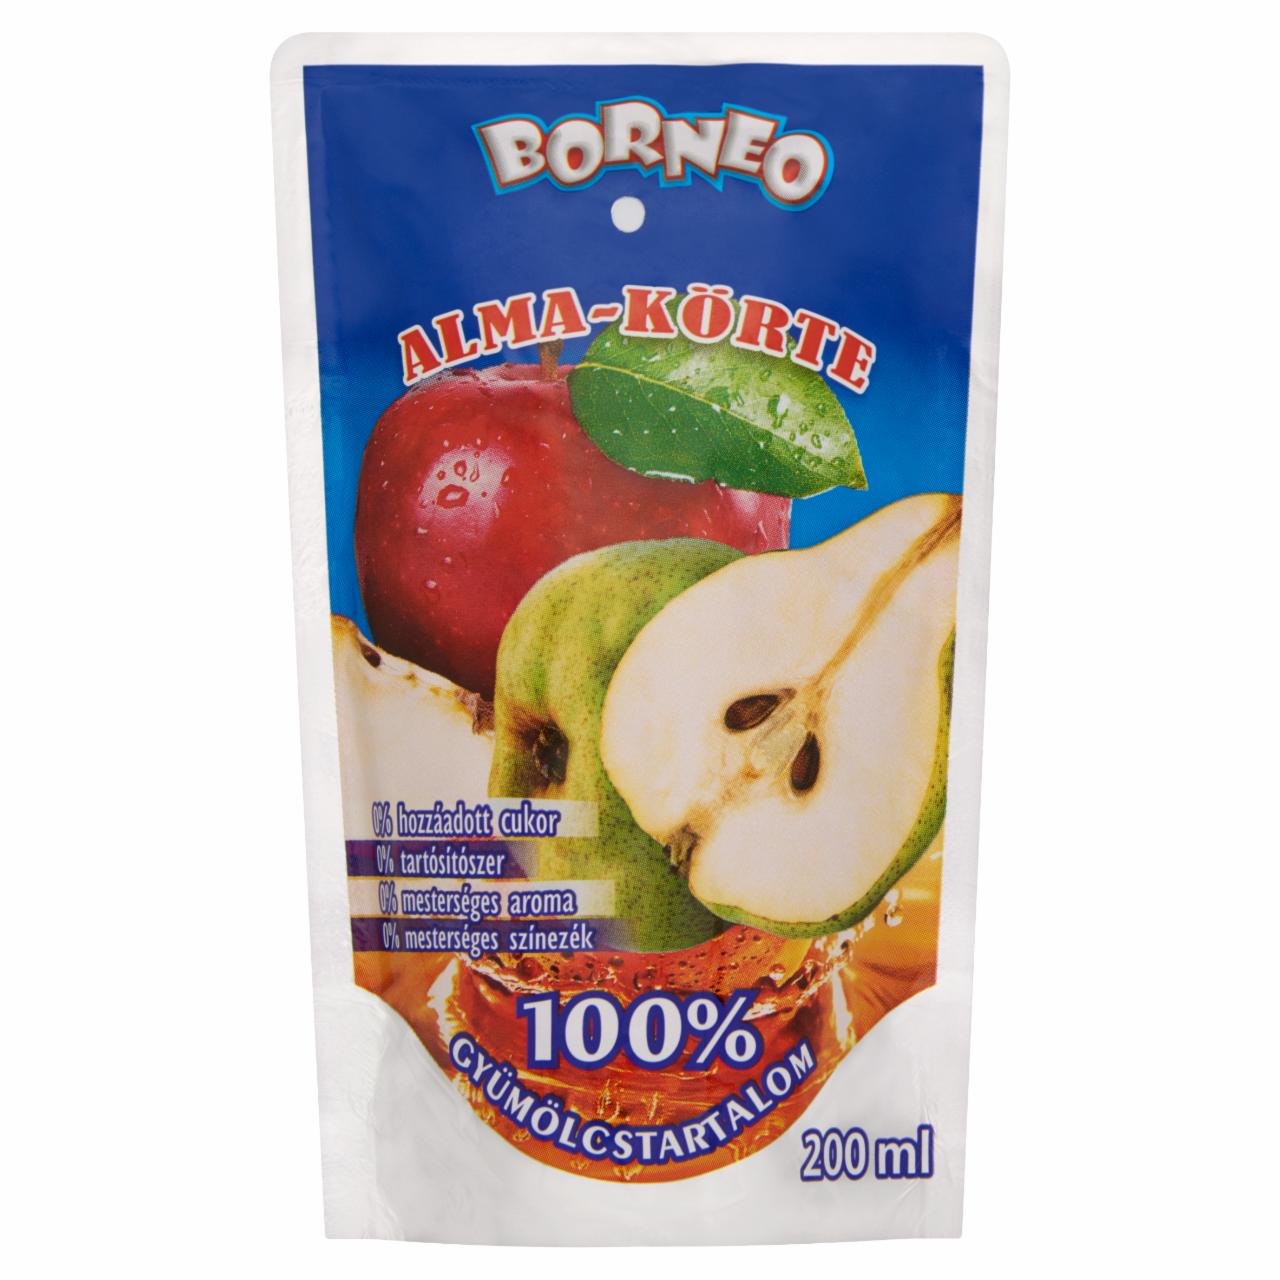 Képek - Borneo alma-körte gyümölcsital 200 ml